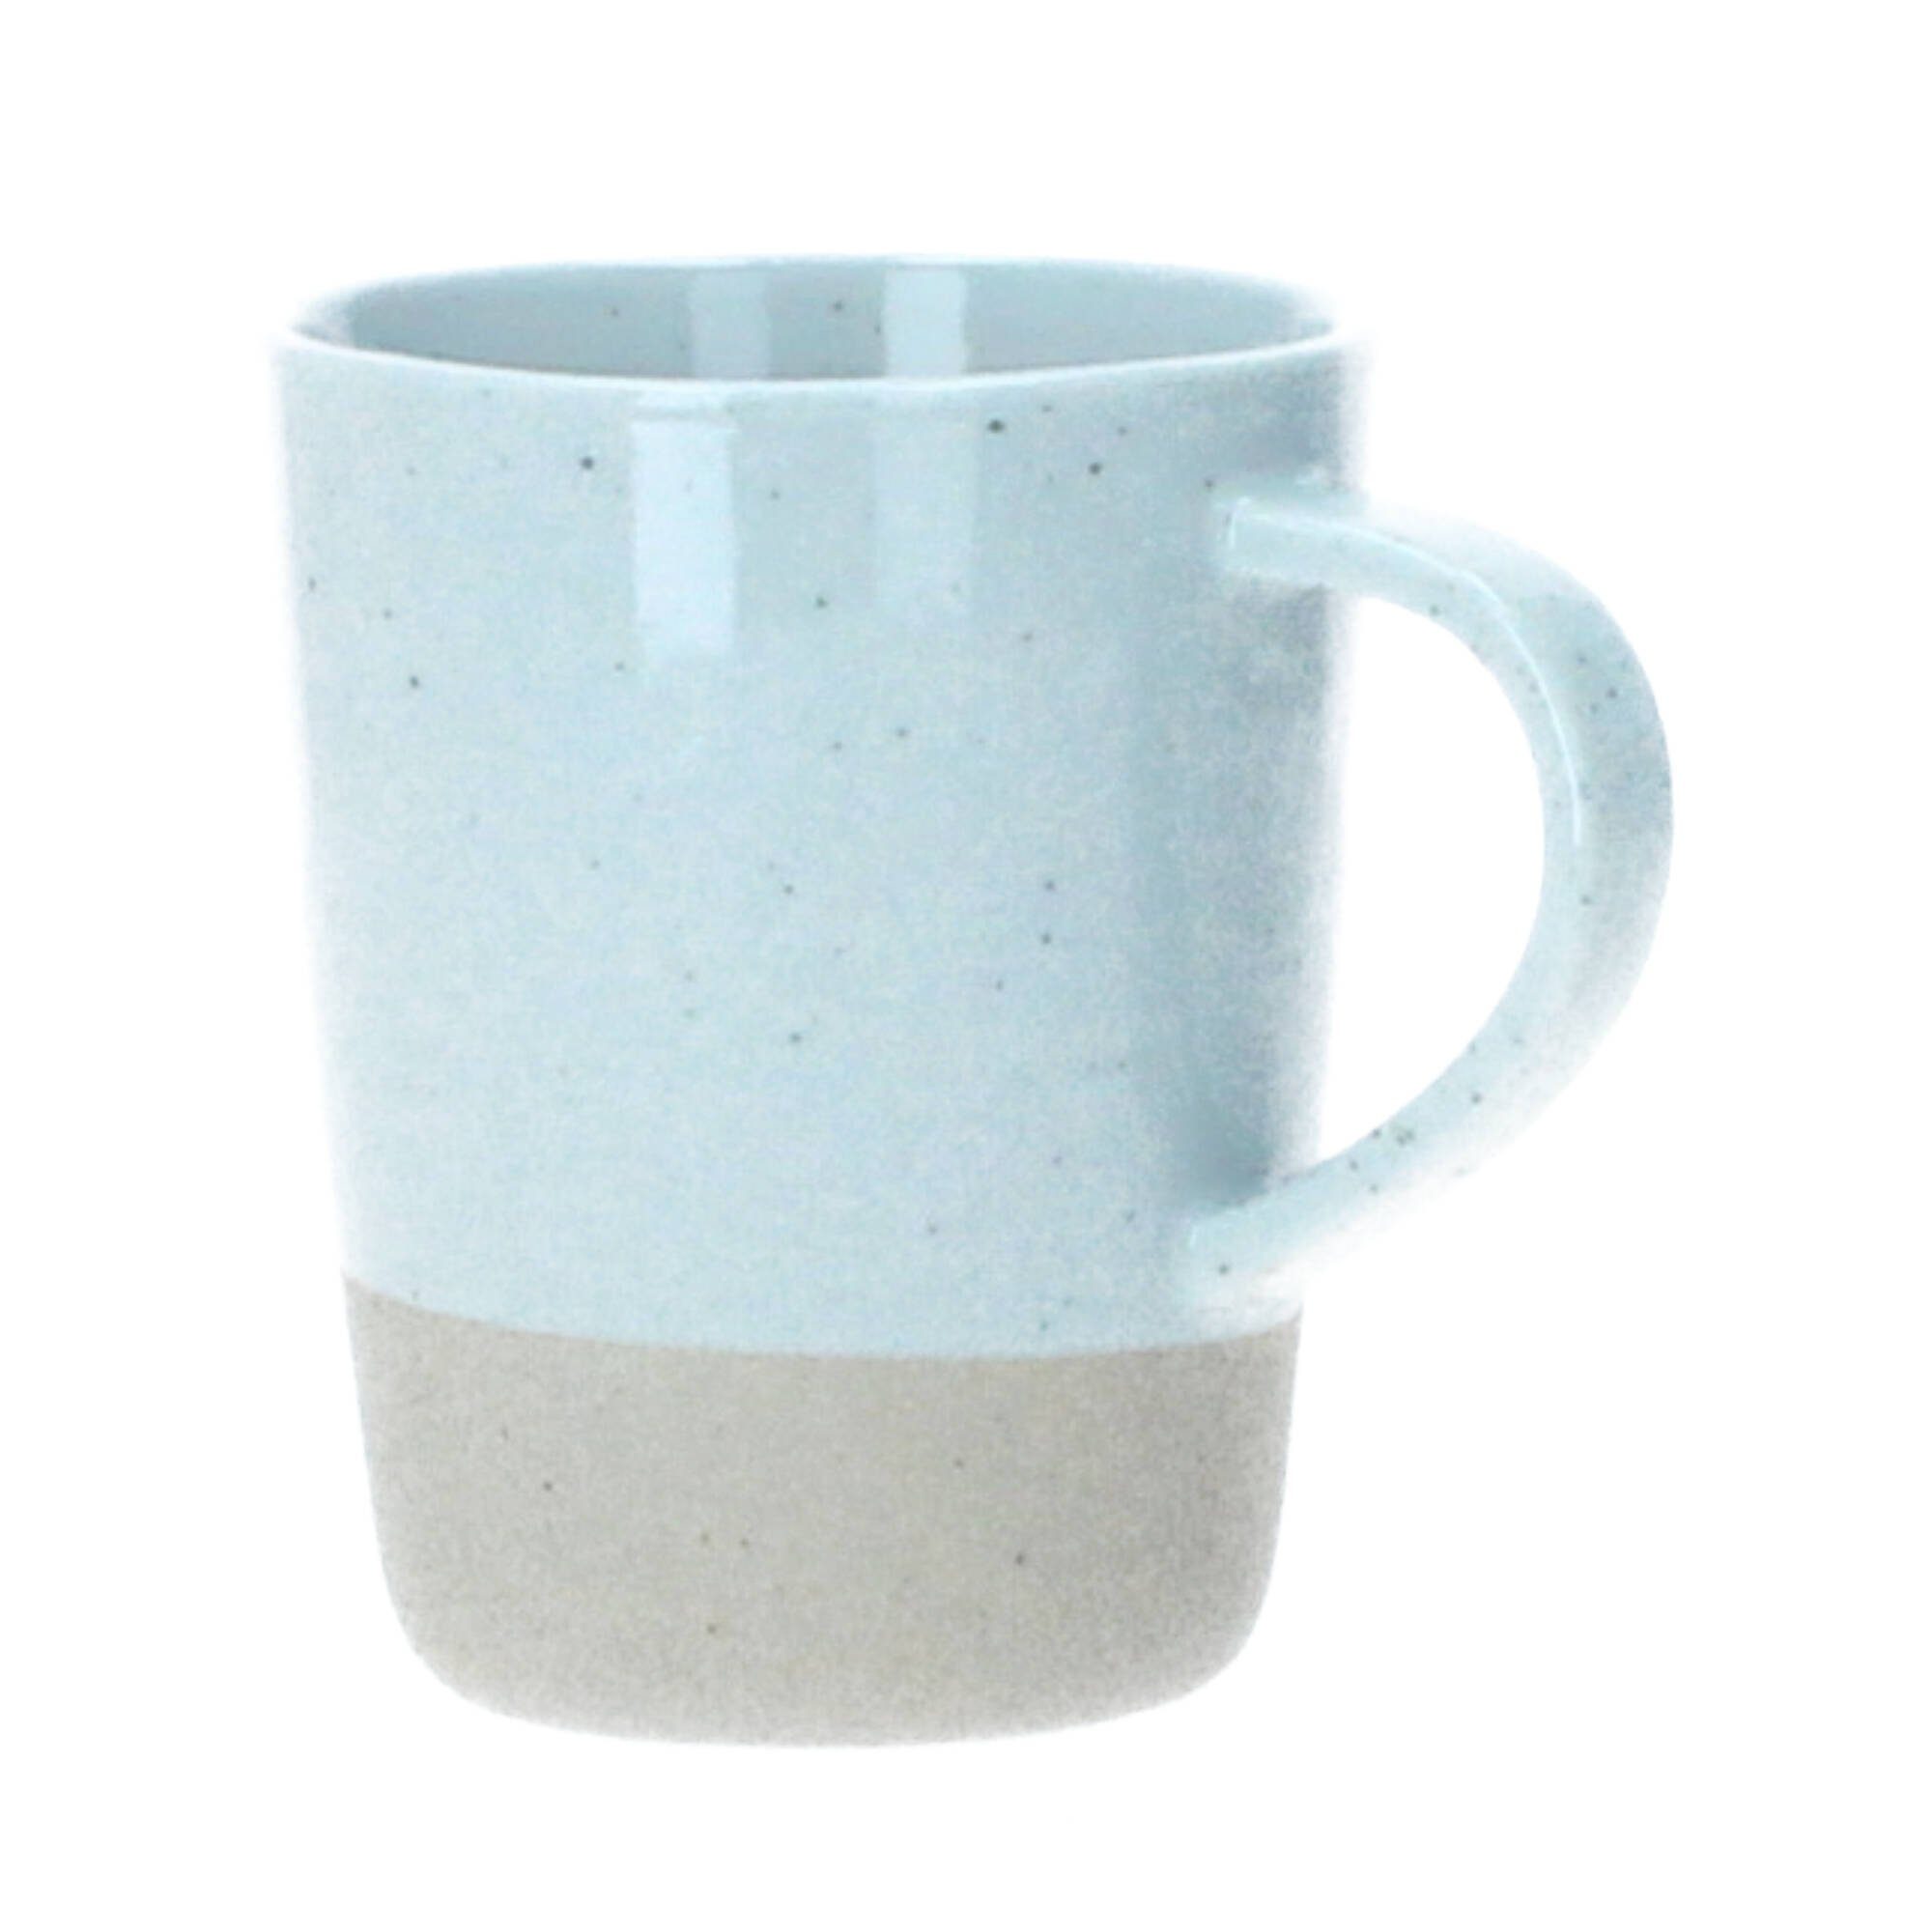 https://i.otto.de/i/otto/0d986004-fbe6-5a0a-8ec9-d00059114312/blomus-becher-sablo-henkelbecher-kaffeetasse-250-ml-keramik-grau-keramik.jpg?$formatz$